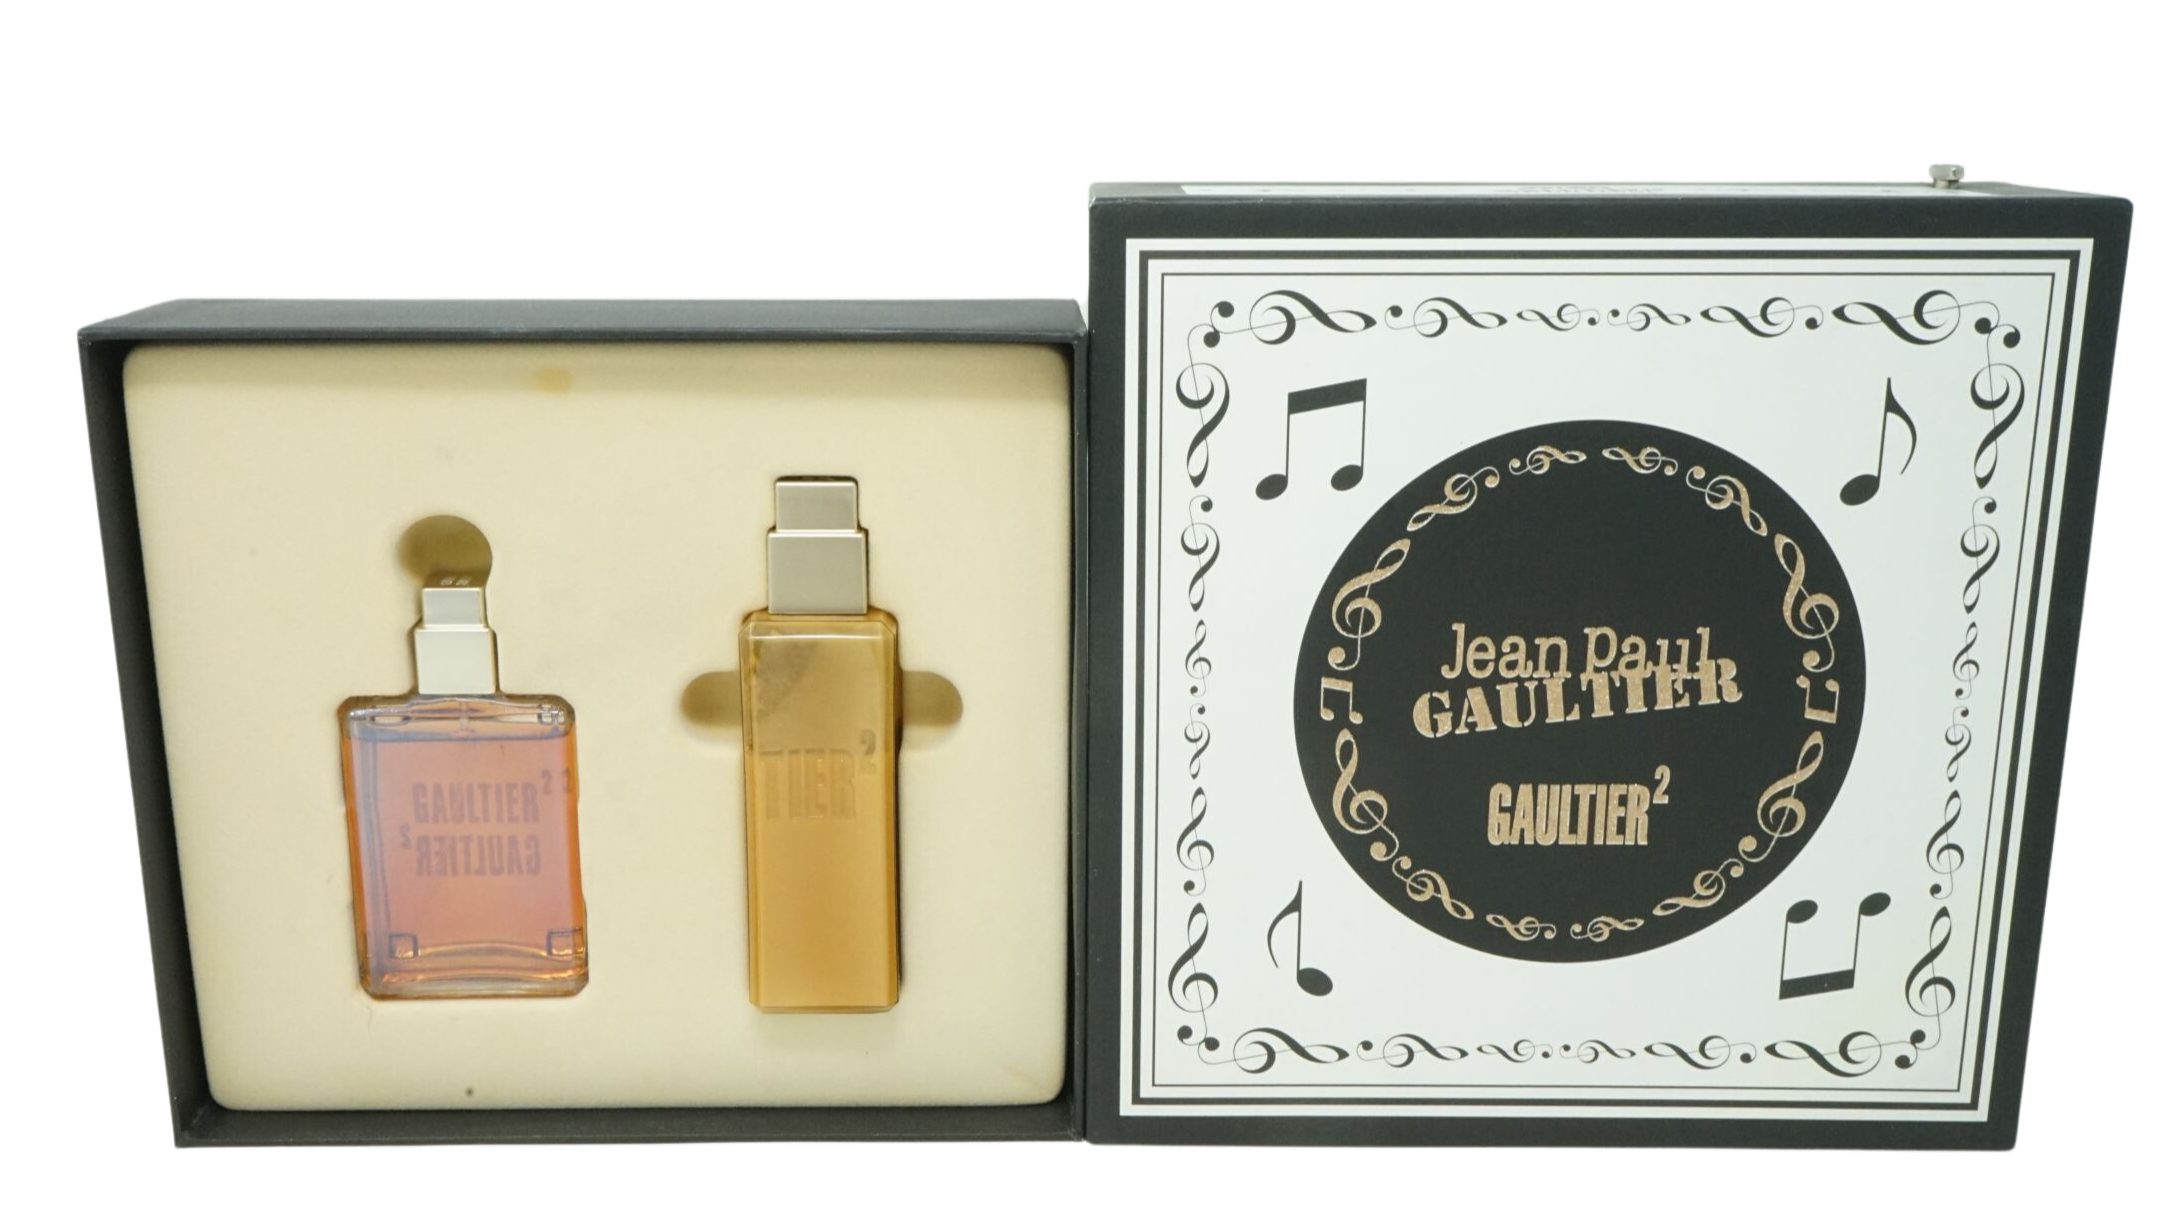 JEAN PAUL GAULTIER Eau de Parfum Jean Paul Gaultier Gaultier 2 Eau de parfum 40ml + Body lotion 100ml